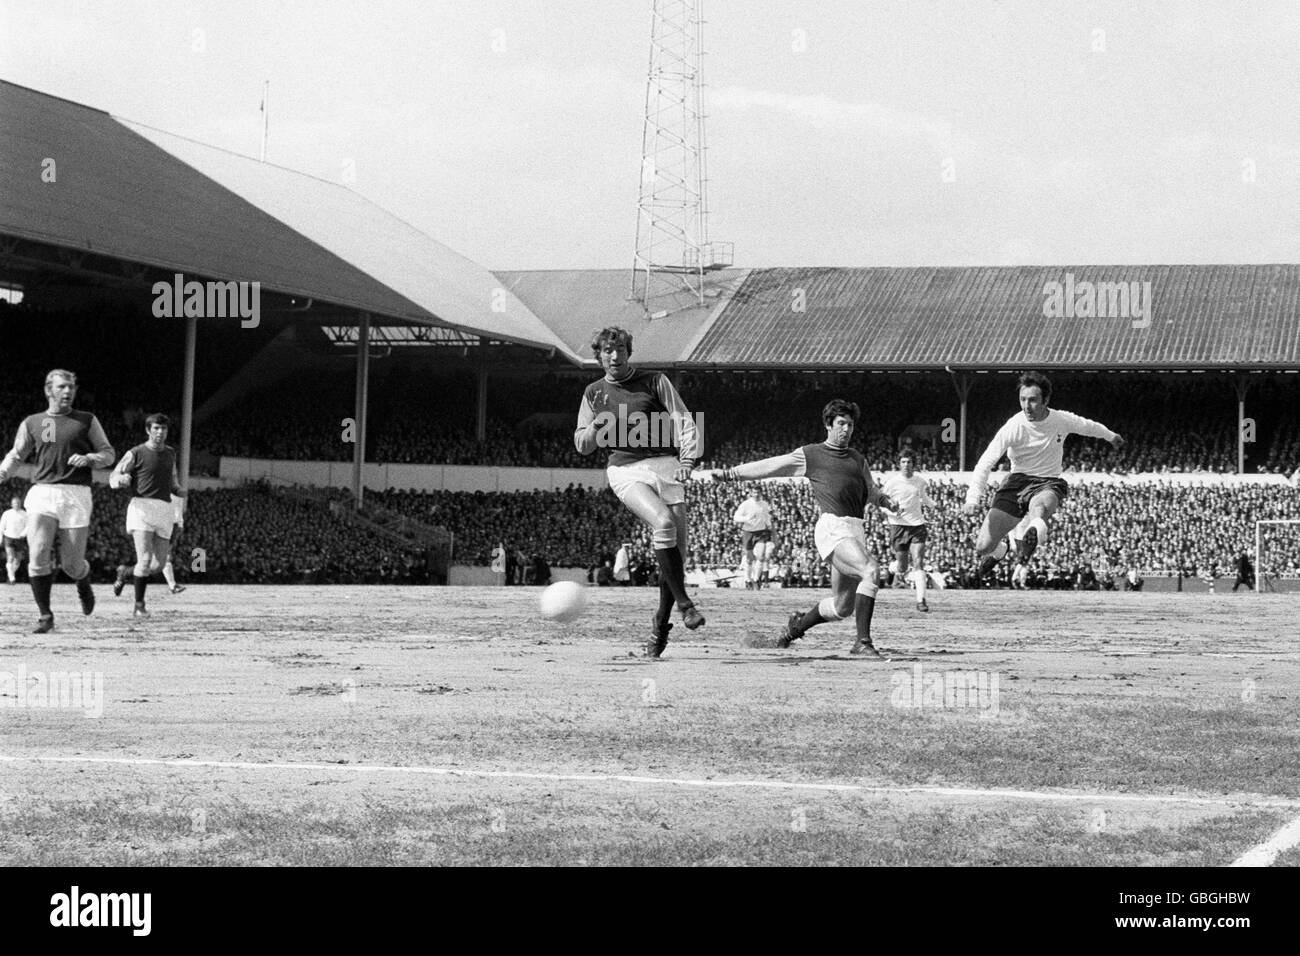 Jimmy Greaves (r) von Tottenham Hotspur schießt auf das Tor. Ebenfalls abgebildet sind Bobby Moore von West Ham United (ganz links) und Billy Bonds (Mitte). Später im Spiel verknüpften die beiden Spieler die Arme und führten einen improvisierten Tanz auf dem Spielfeld auf. Stockfoto